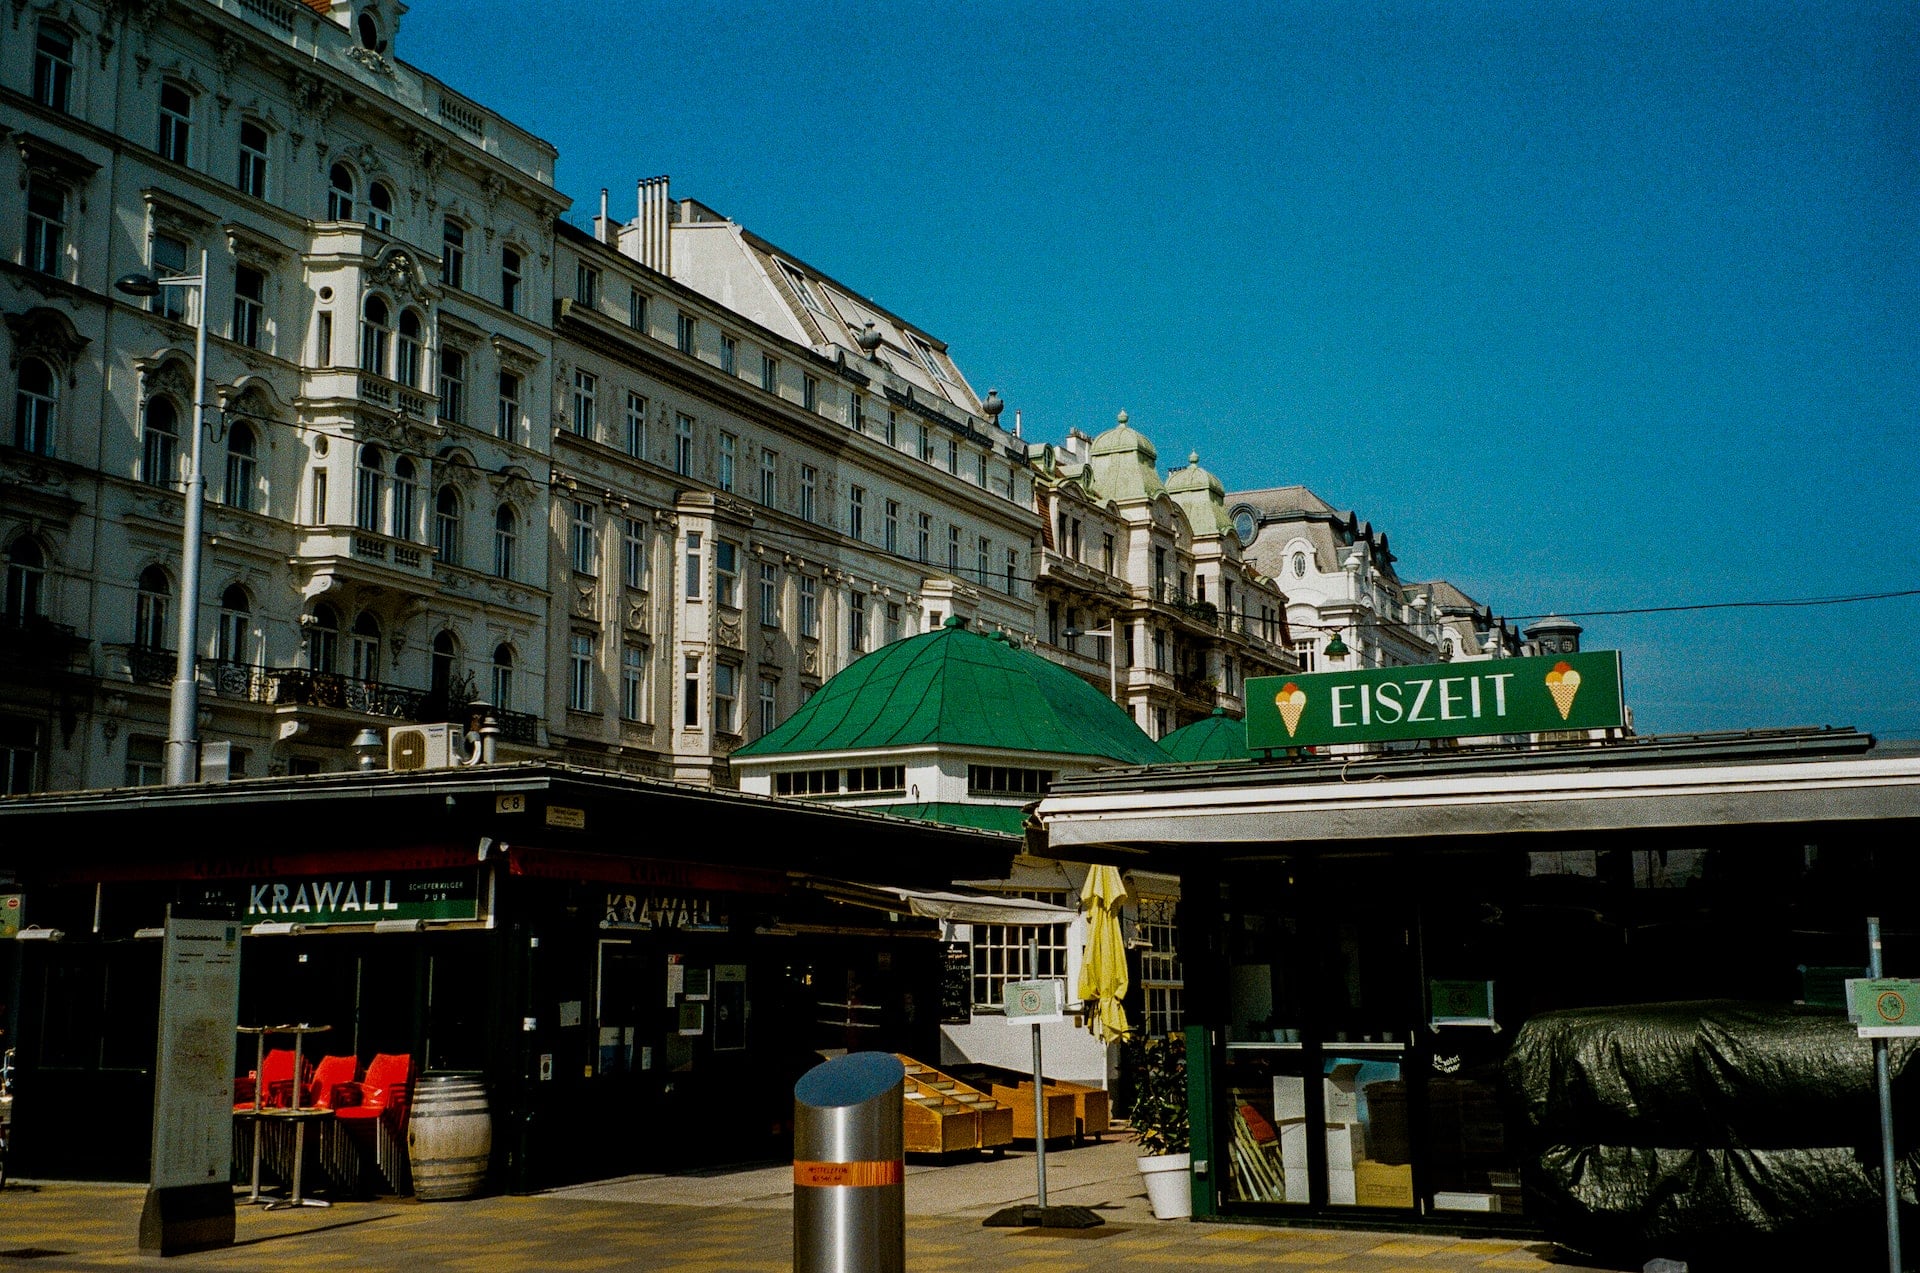 Con el mercado Naschmarkt como principal atracción, Mariahilf es un distrito animado y alternativo en Viena